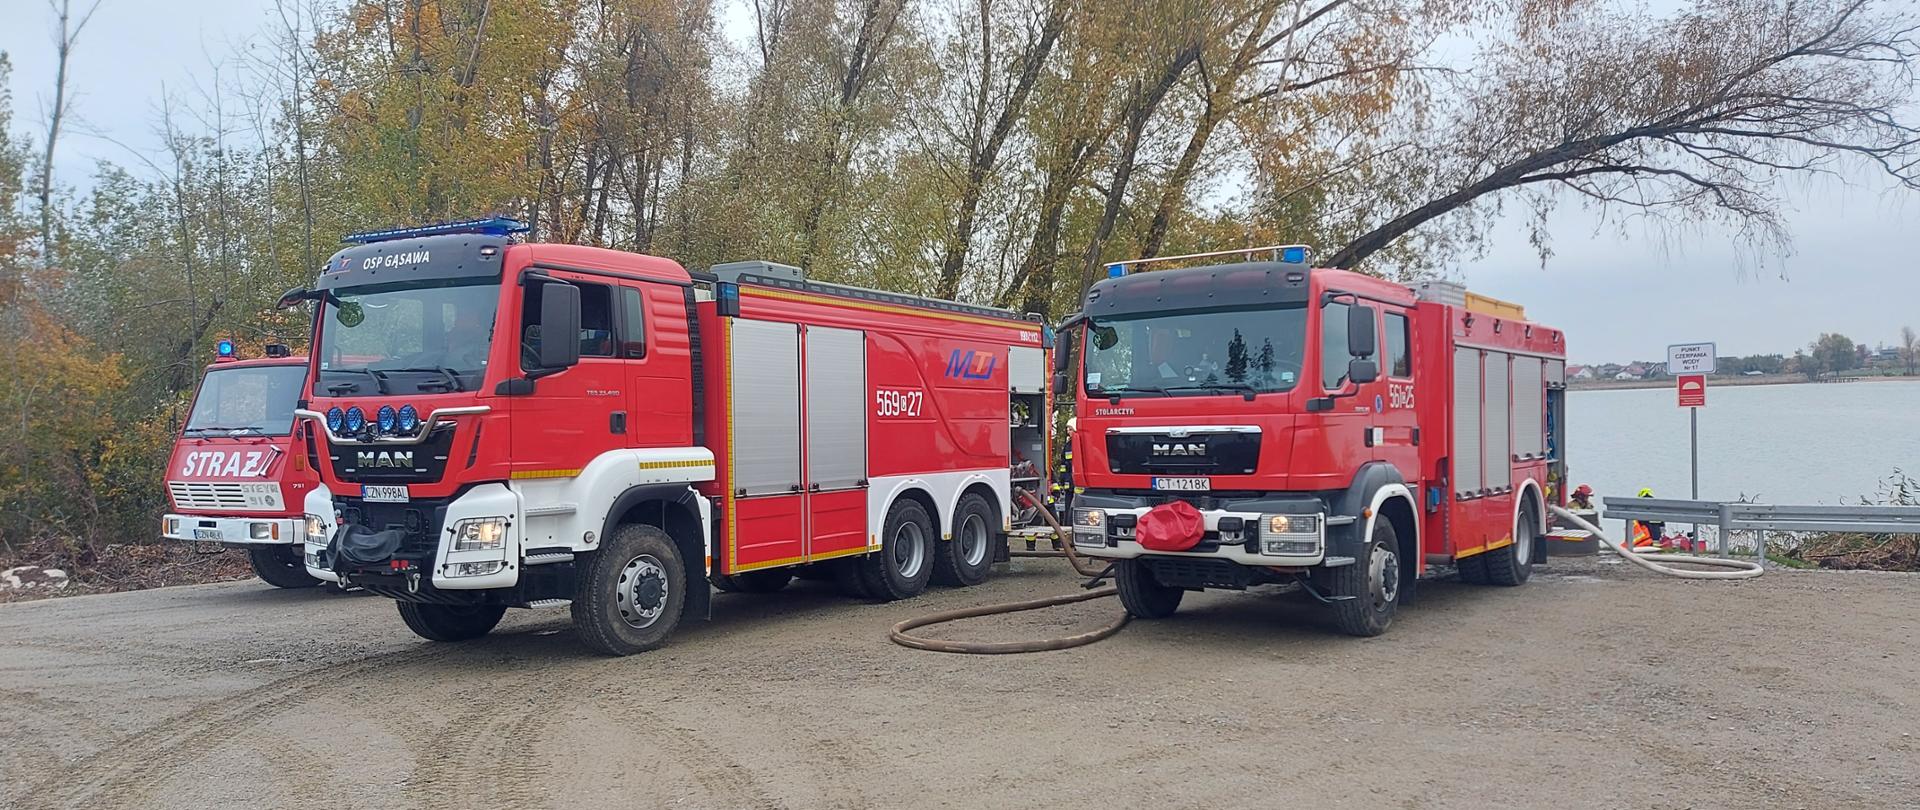 Pojazdy pożarnicze w czasie szkolenia w zasysaniu wody z punktu